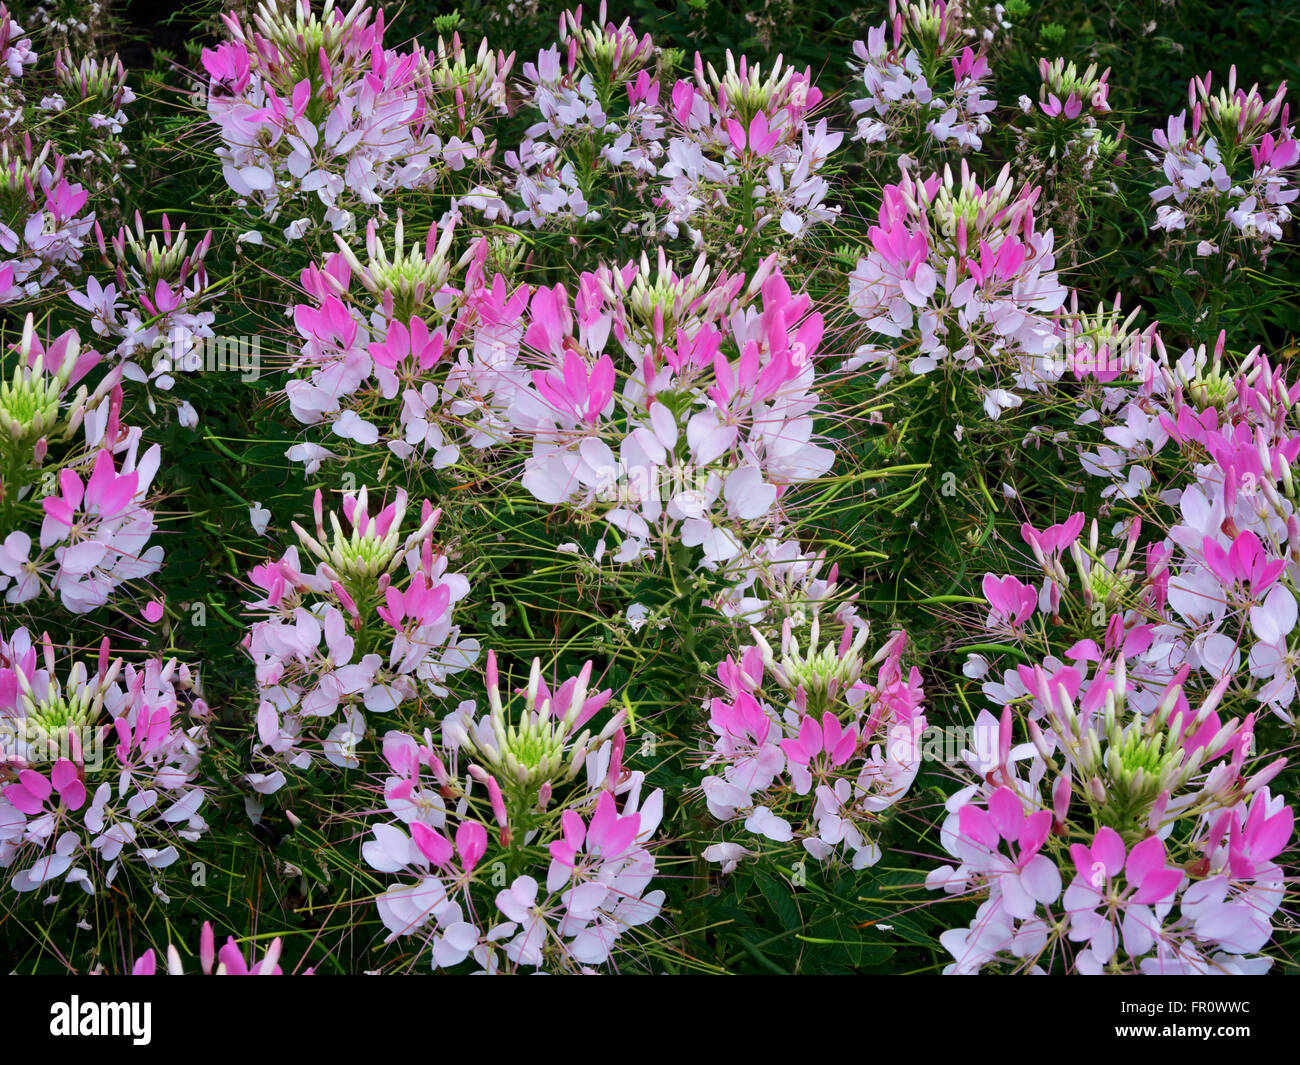 Cleome Sparkler Blush flowers. Oregon Garden, Silverton, Oregon Stock Photo